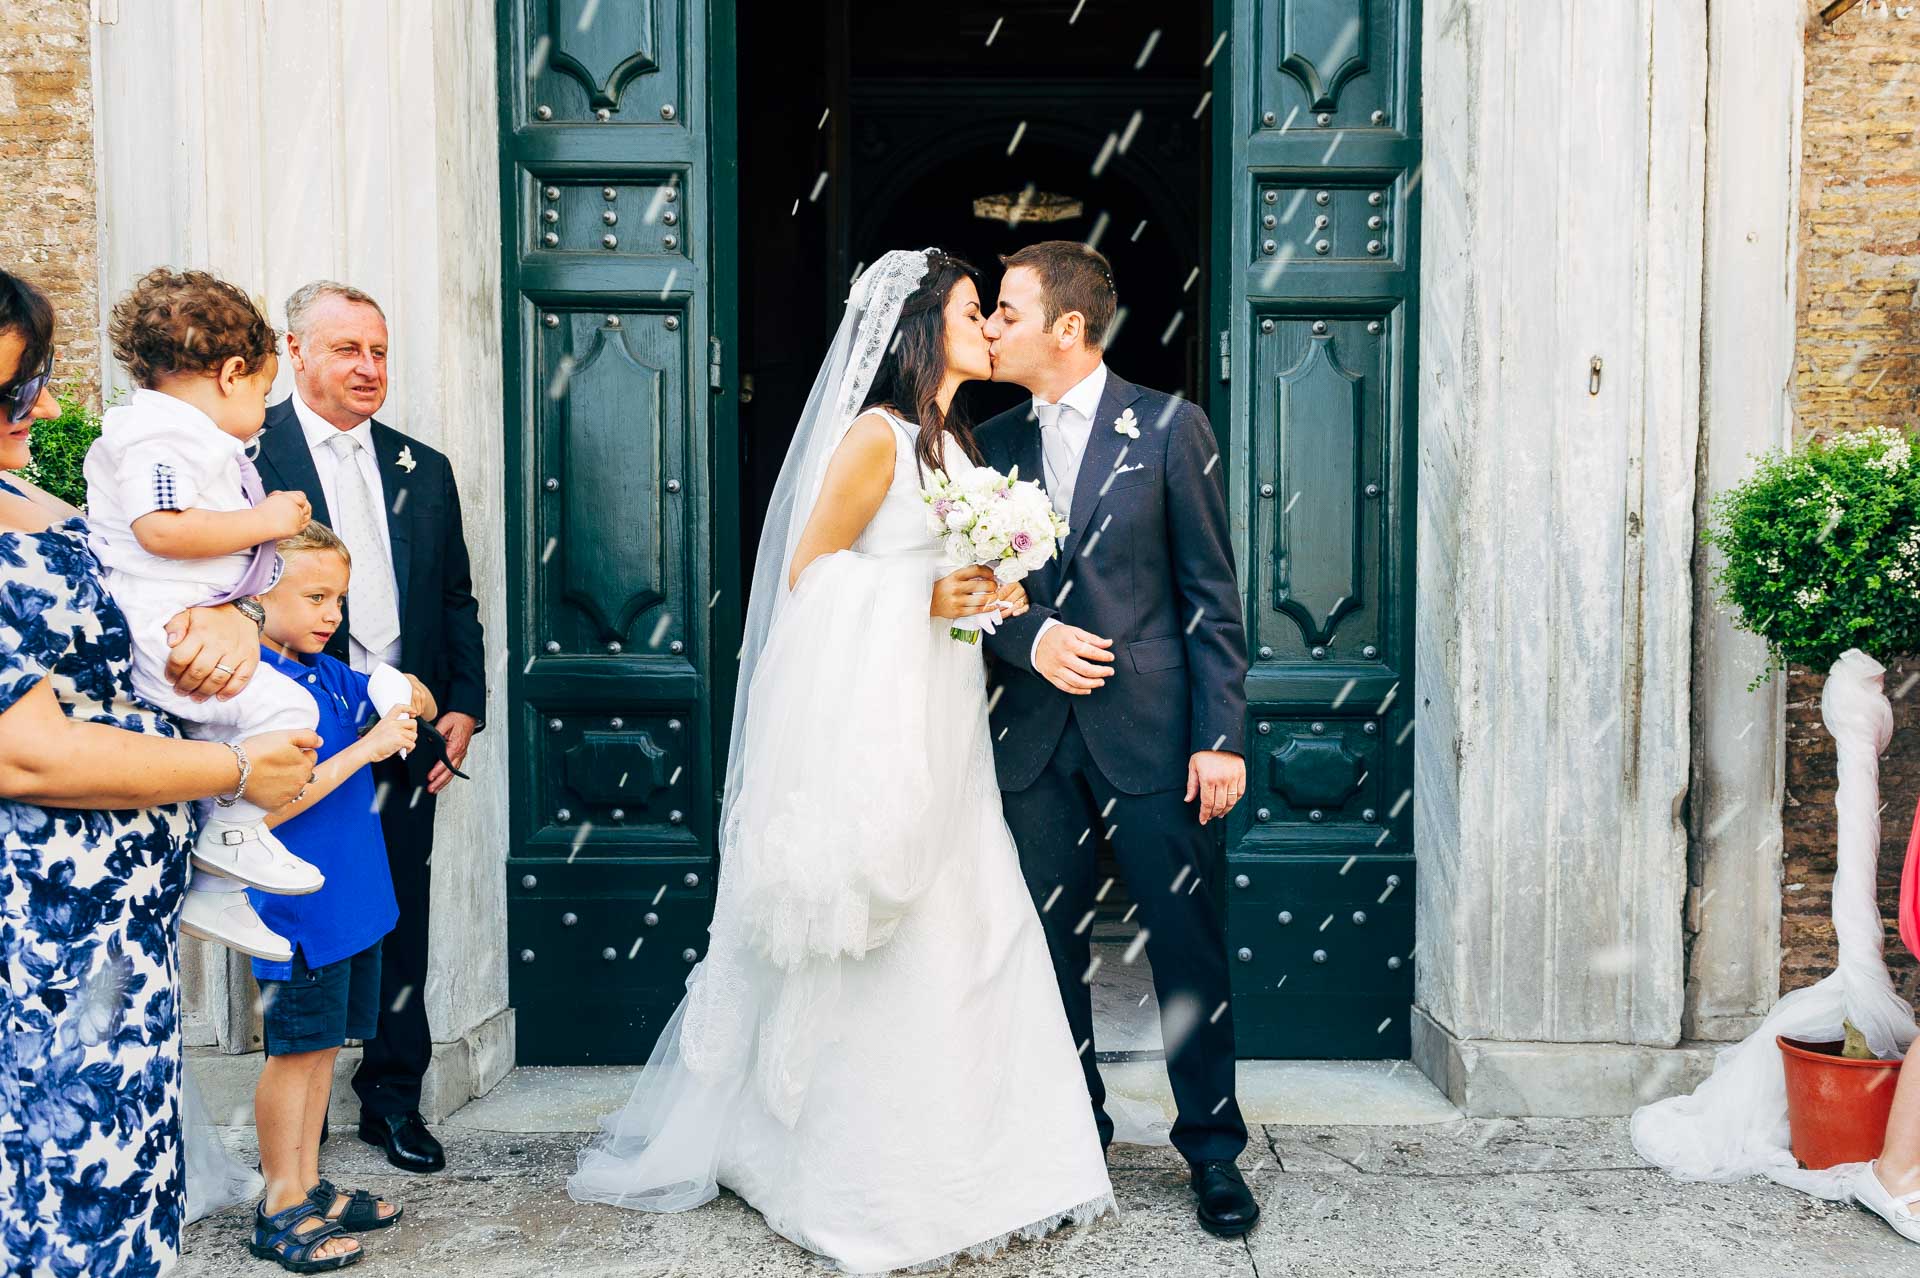 Lancio del riso all'uscita della chiesa di Santa Maria di Loreto a Roma durante un matrimonio